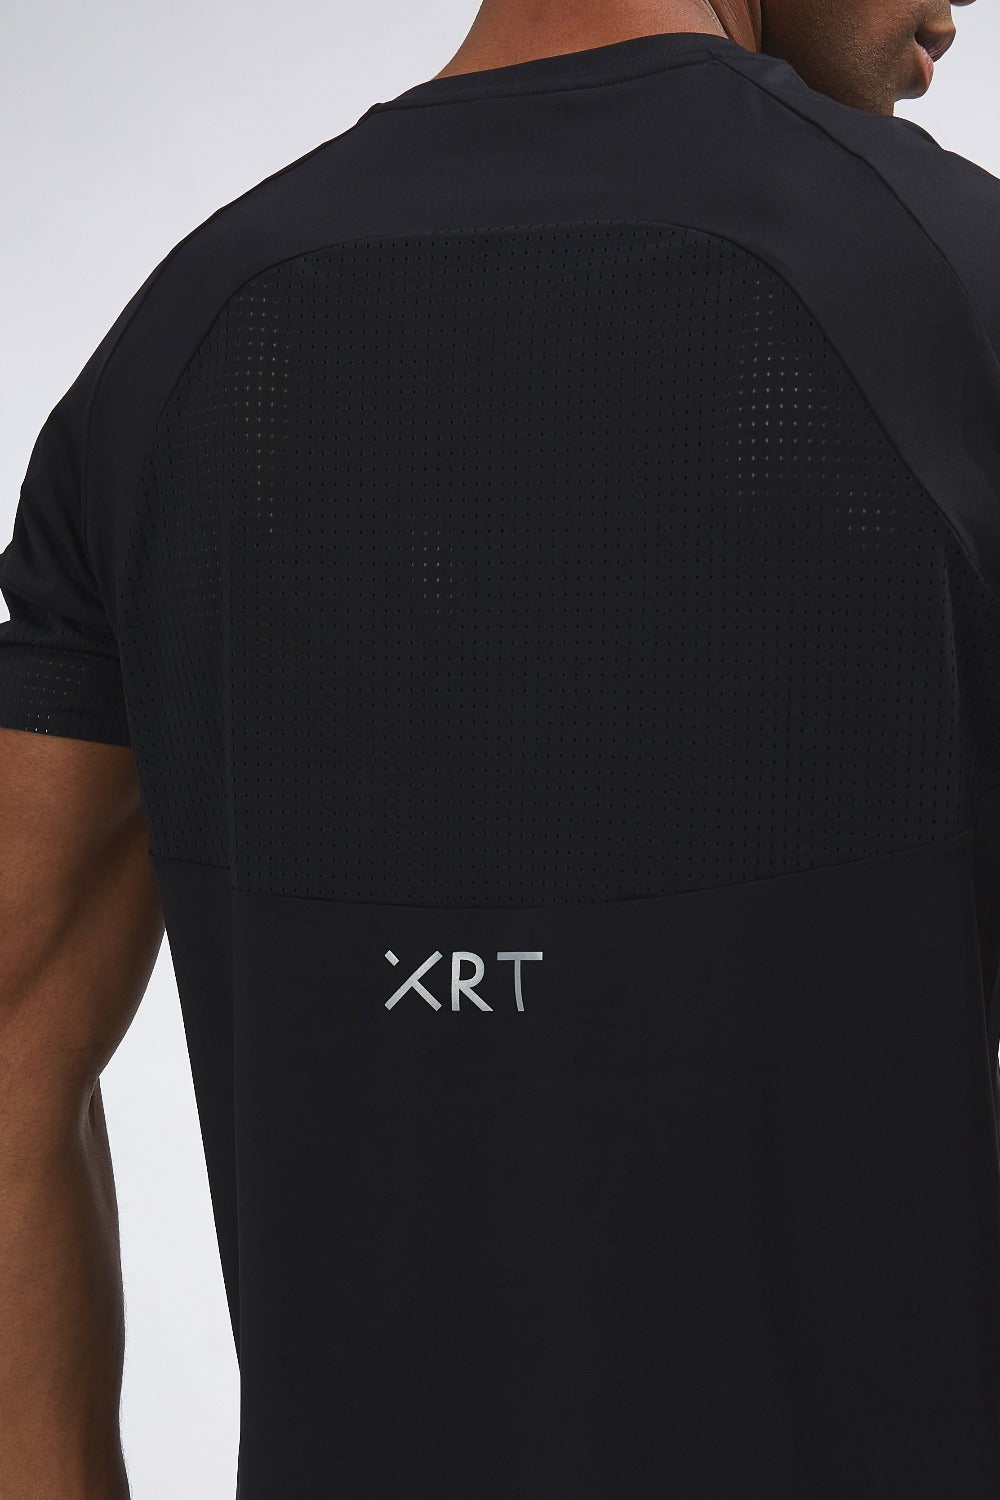 Black sport XRT t-shirt